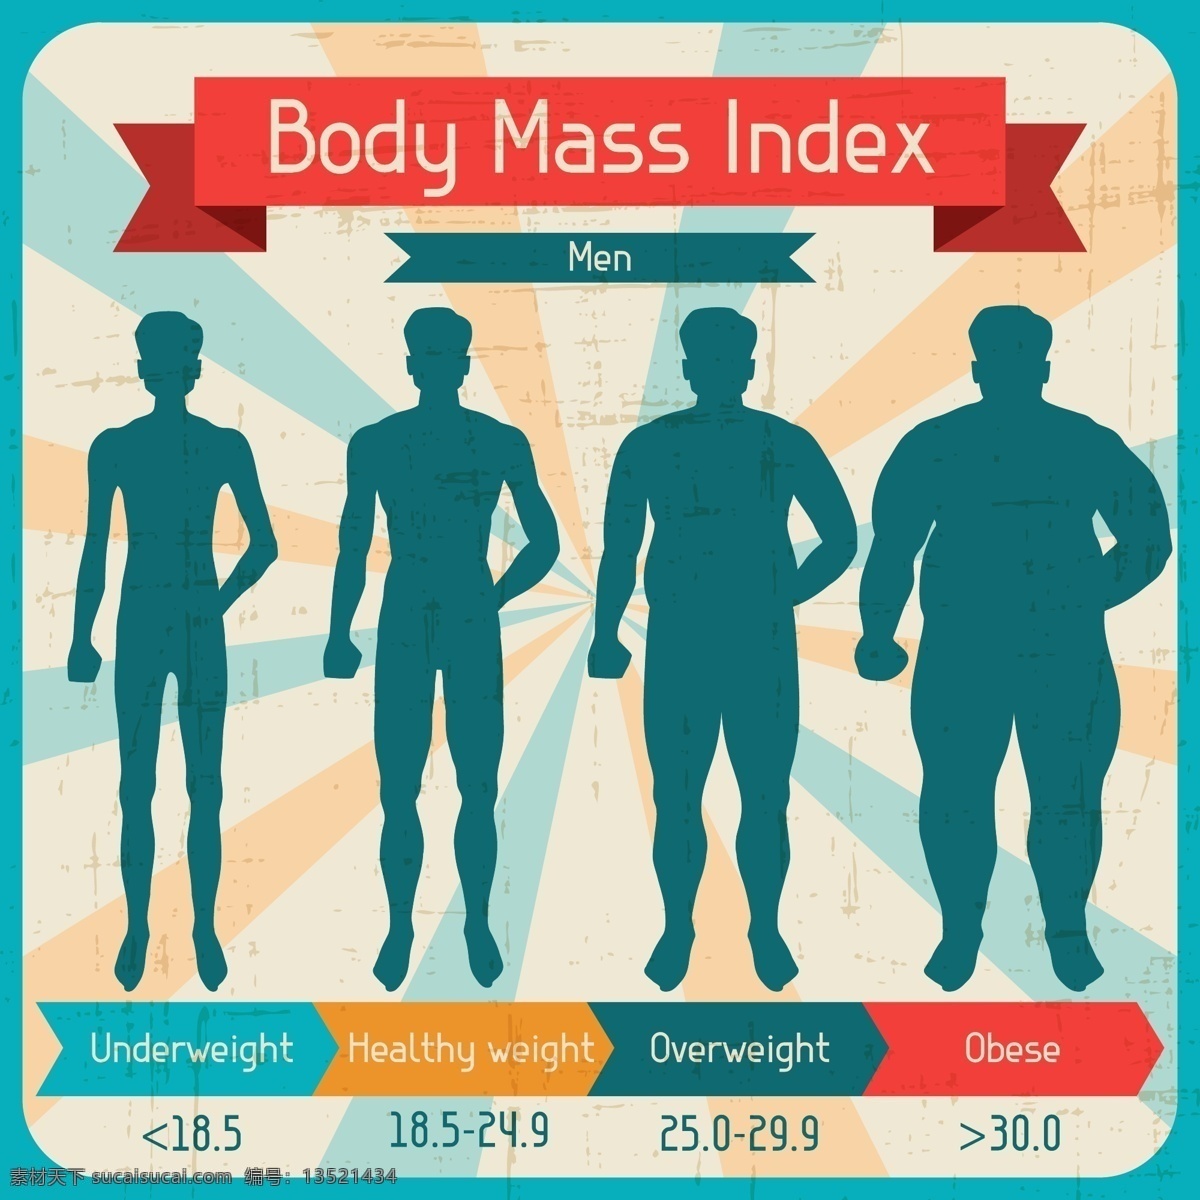 人类 数据分析 矢量 百分比 材料 肥胖 分类 分析 健康 人 身材 矢量素材 矢量图 体 人均 图表 比较图 图 控股 索引 信息 超重 质量 解决 统计 重 数据 向量 其他矢量图